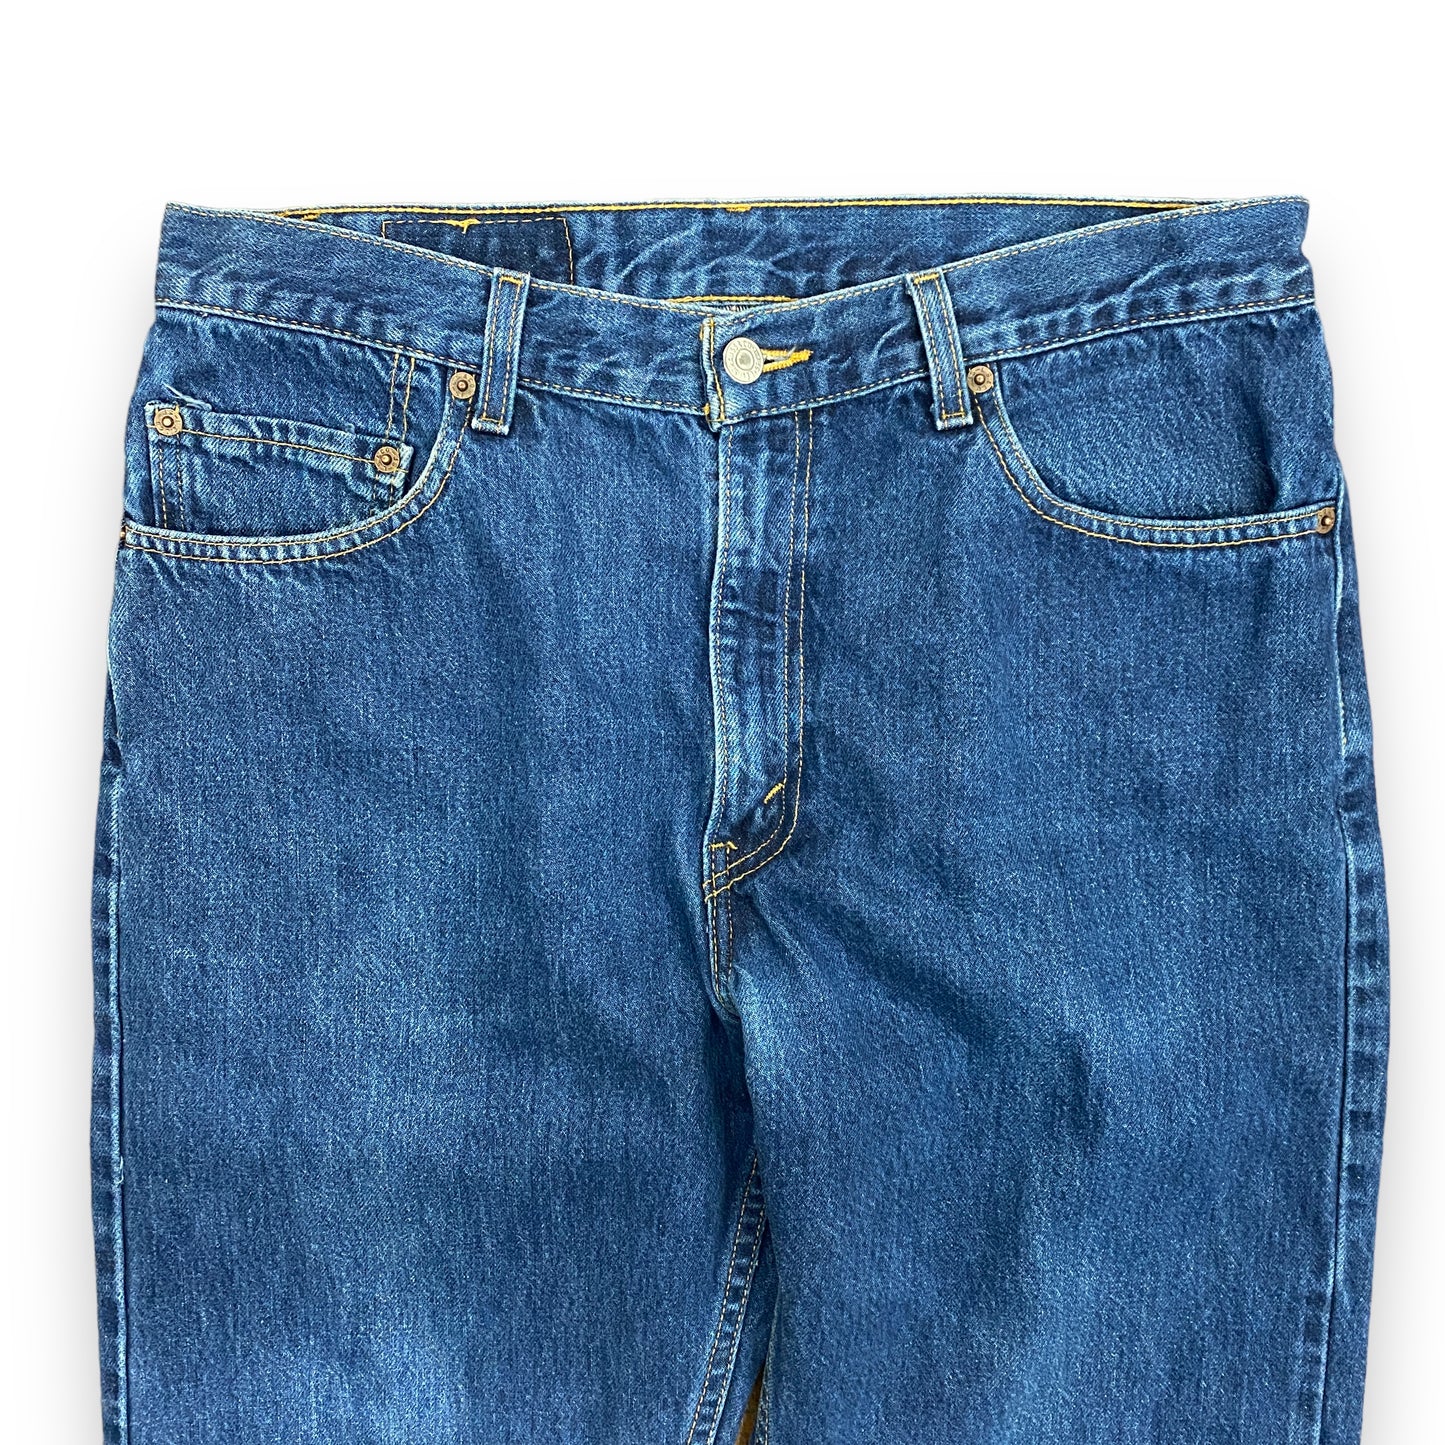 Vintage 1990s Levi's Dark Wash Denim Jeans - 32"x26"